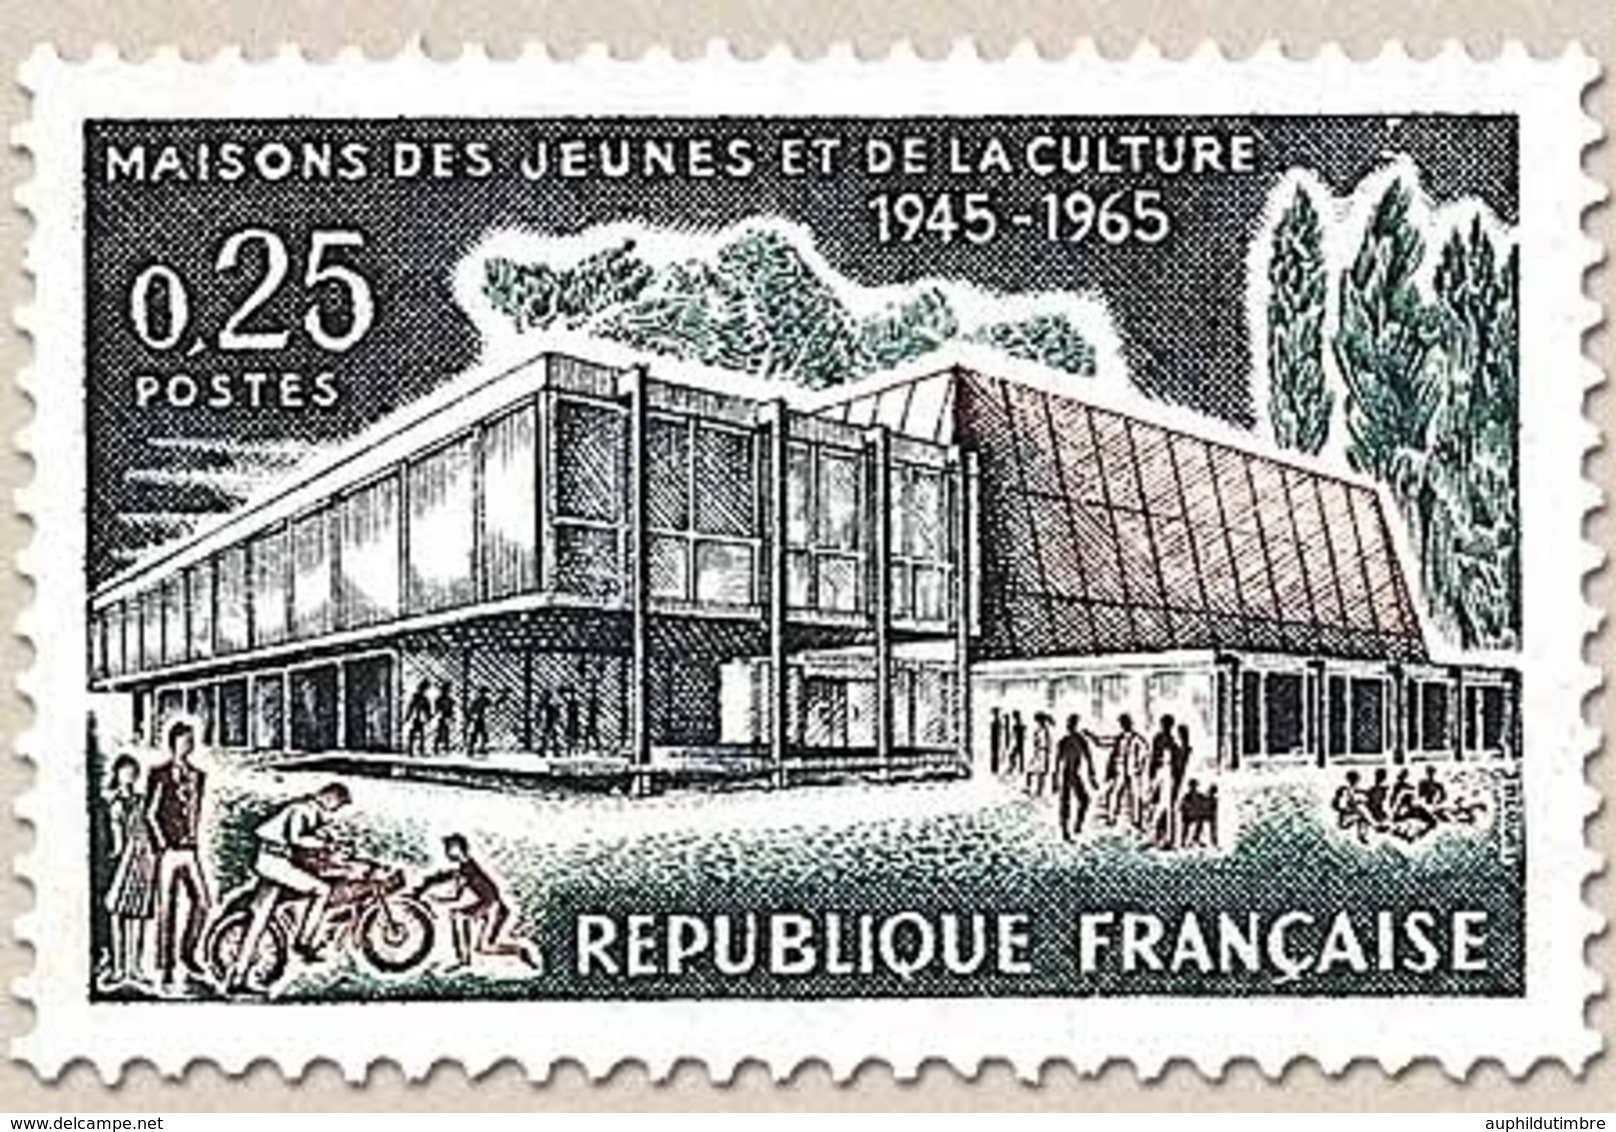 Maisons Des Jeunes Et De La Culture. Troyes : Maison Des Jaunes Et De La Culture. 25c. Y1448 - Neufs